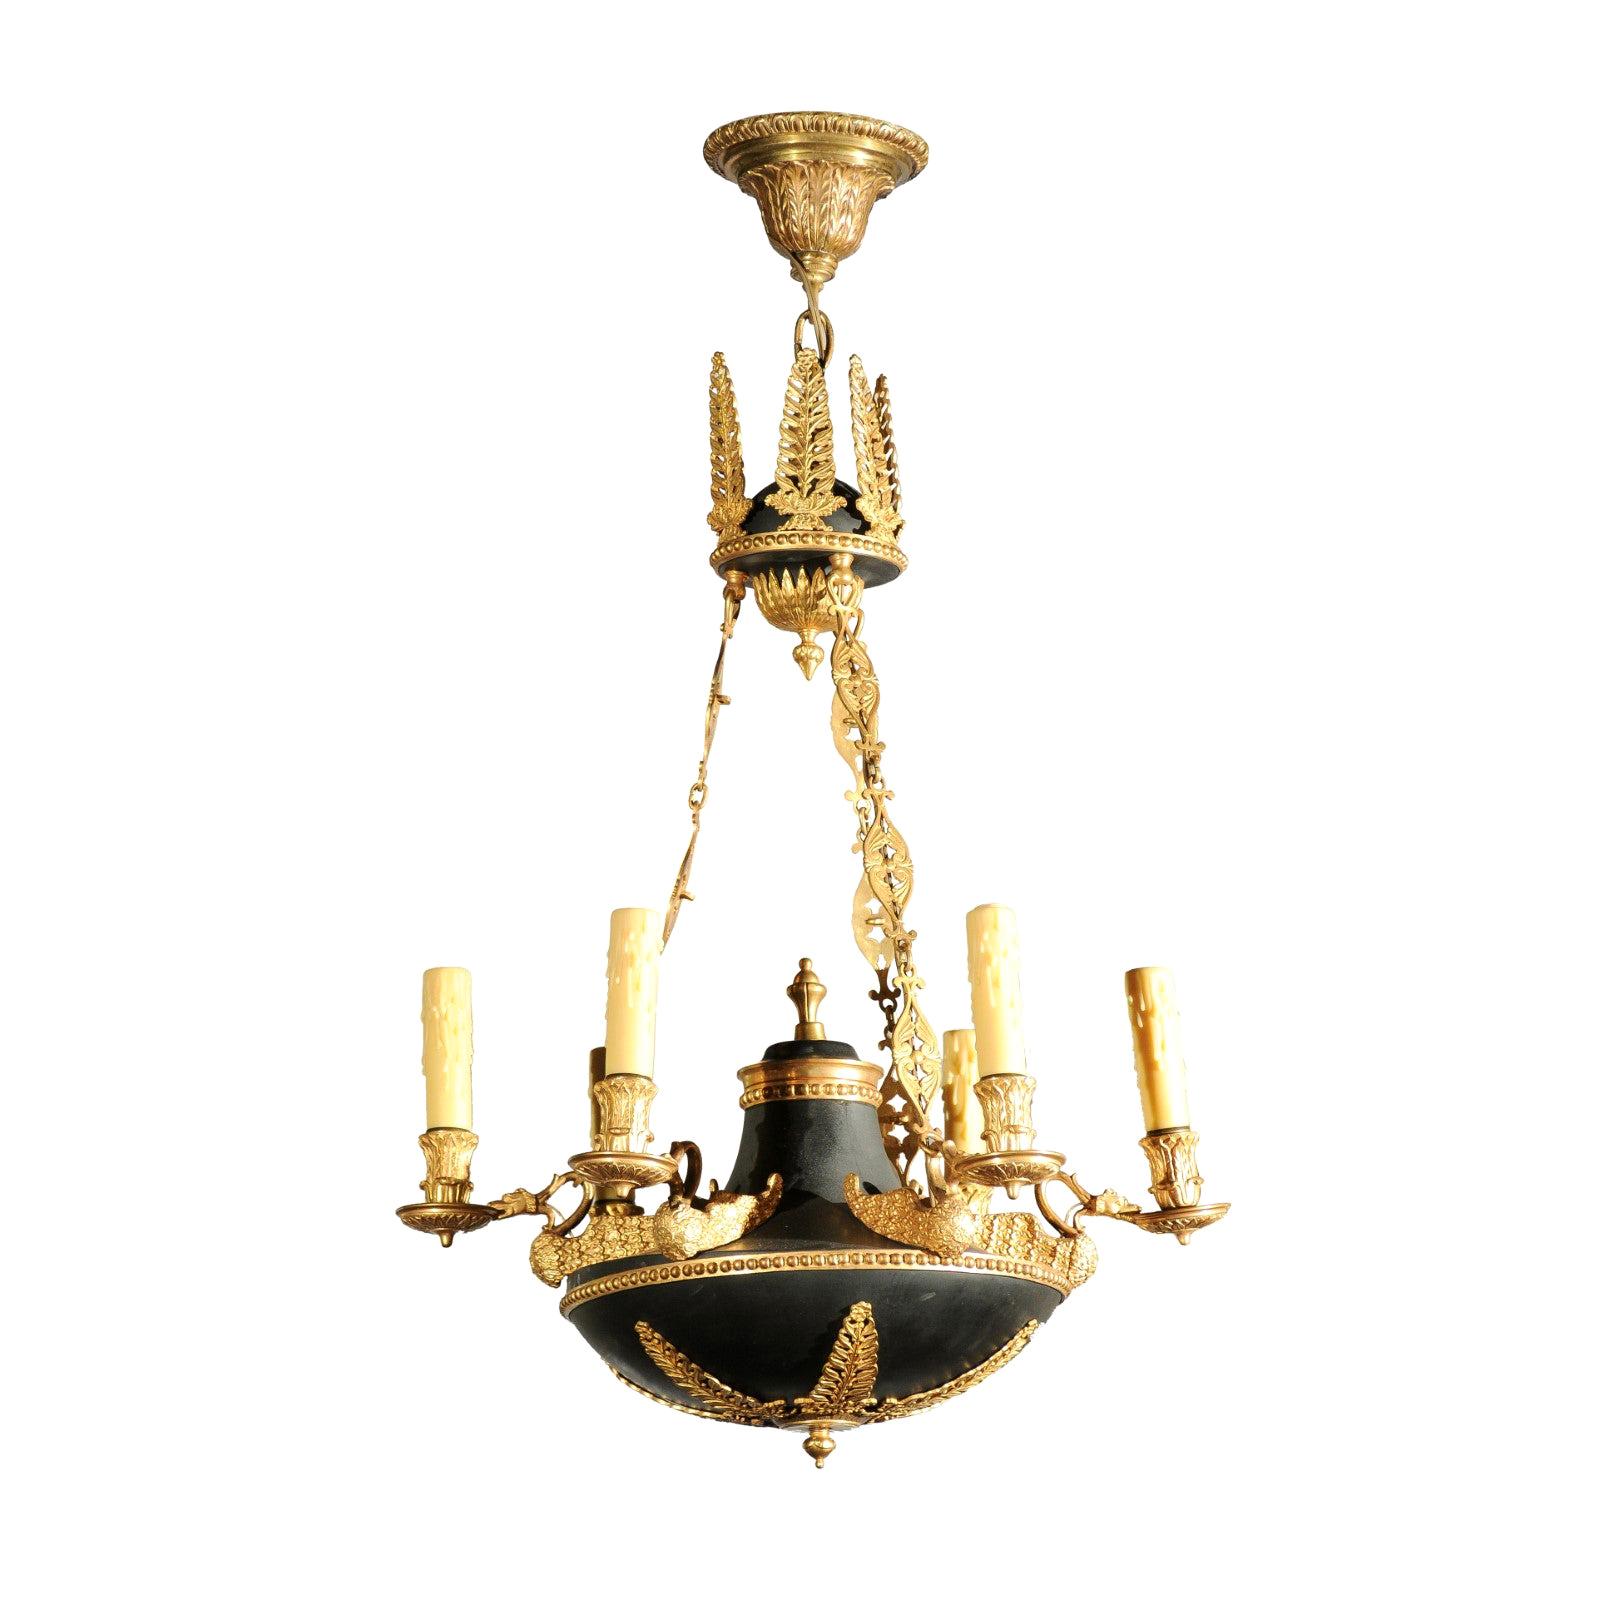 Französischer Kronleuchter mit sechs Lichtern aus Bronze und Metall im Empire-Stil der 1870er Jahre mit Palmetten